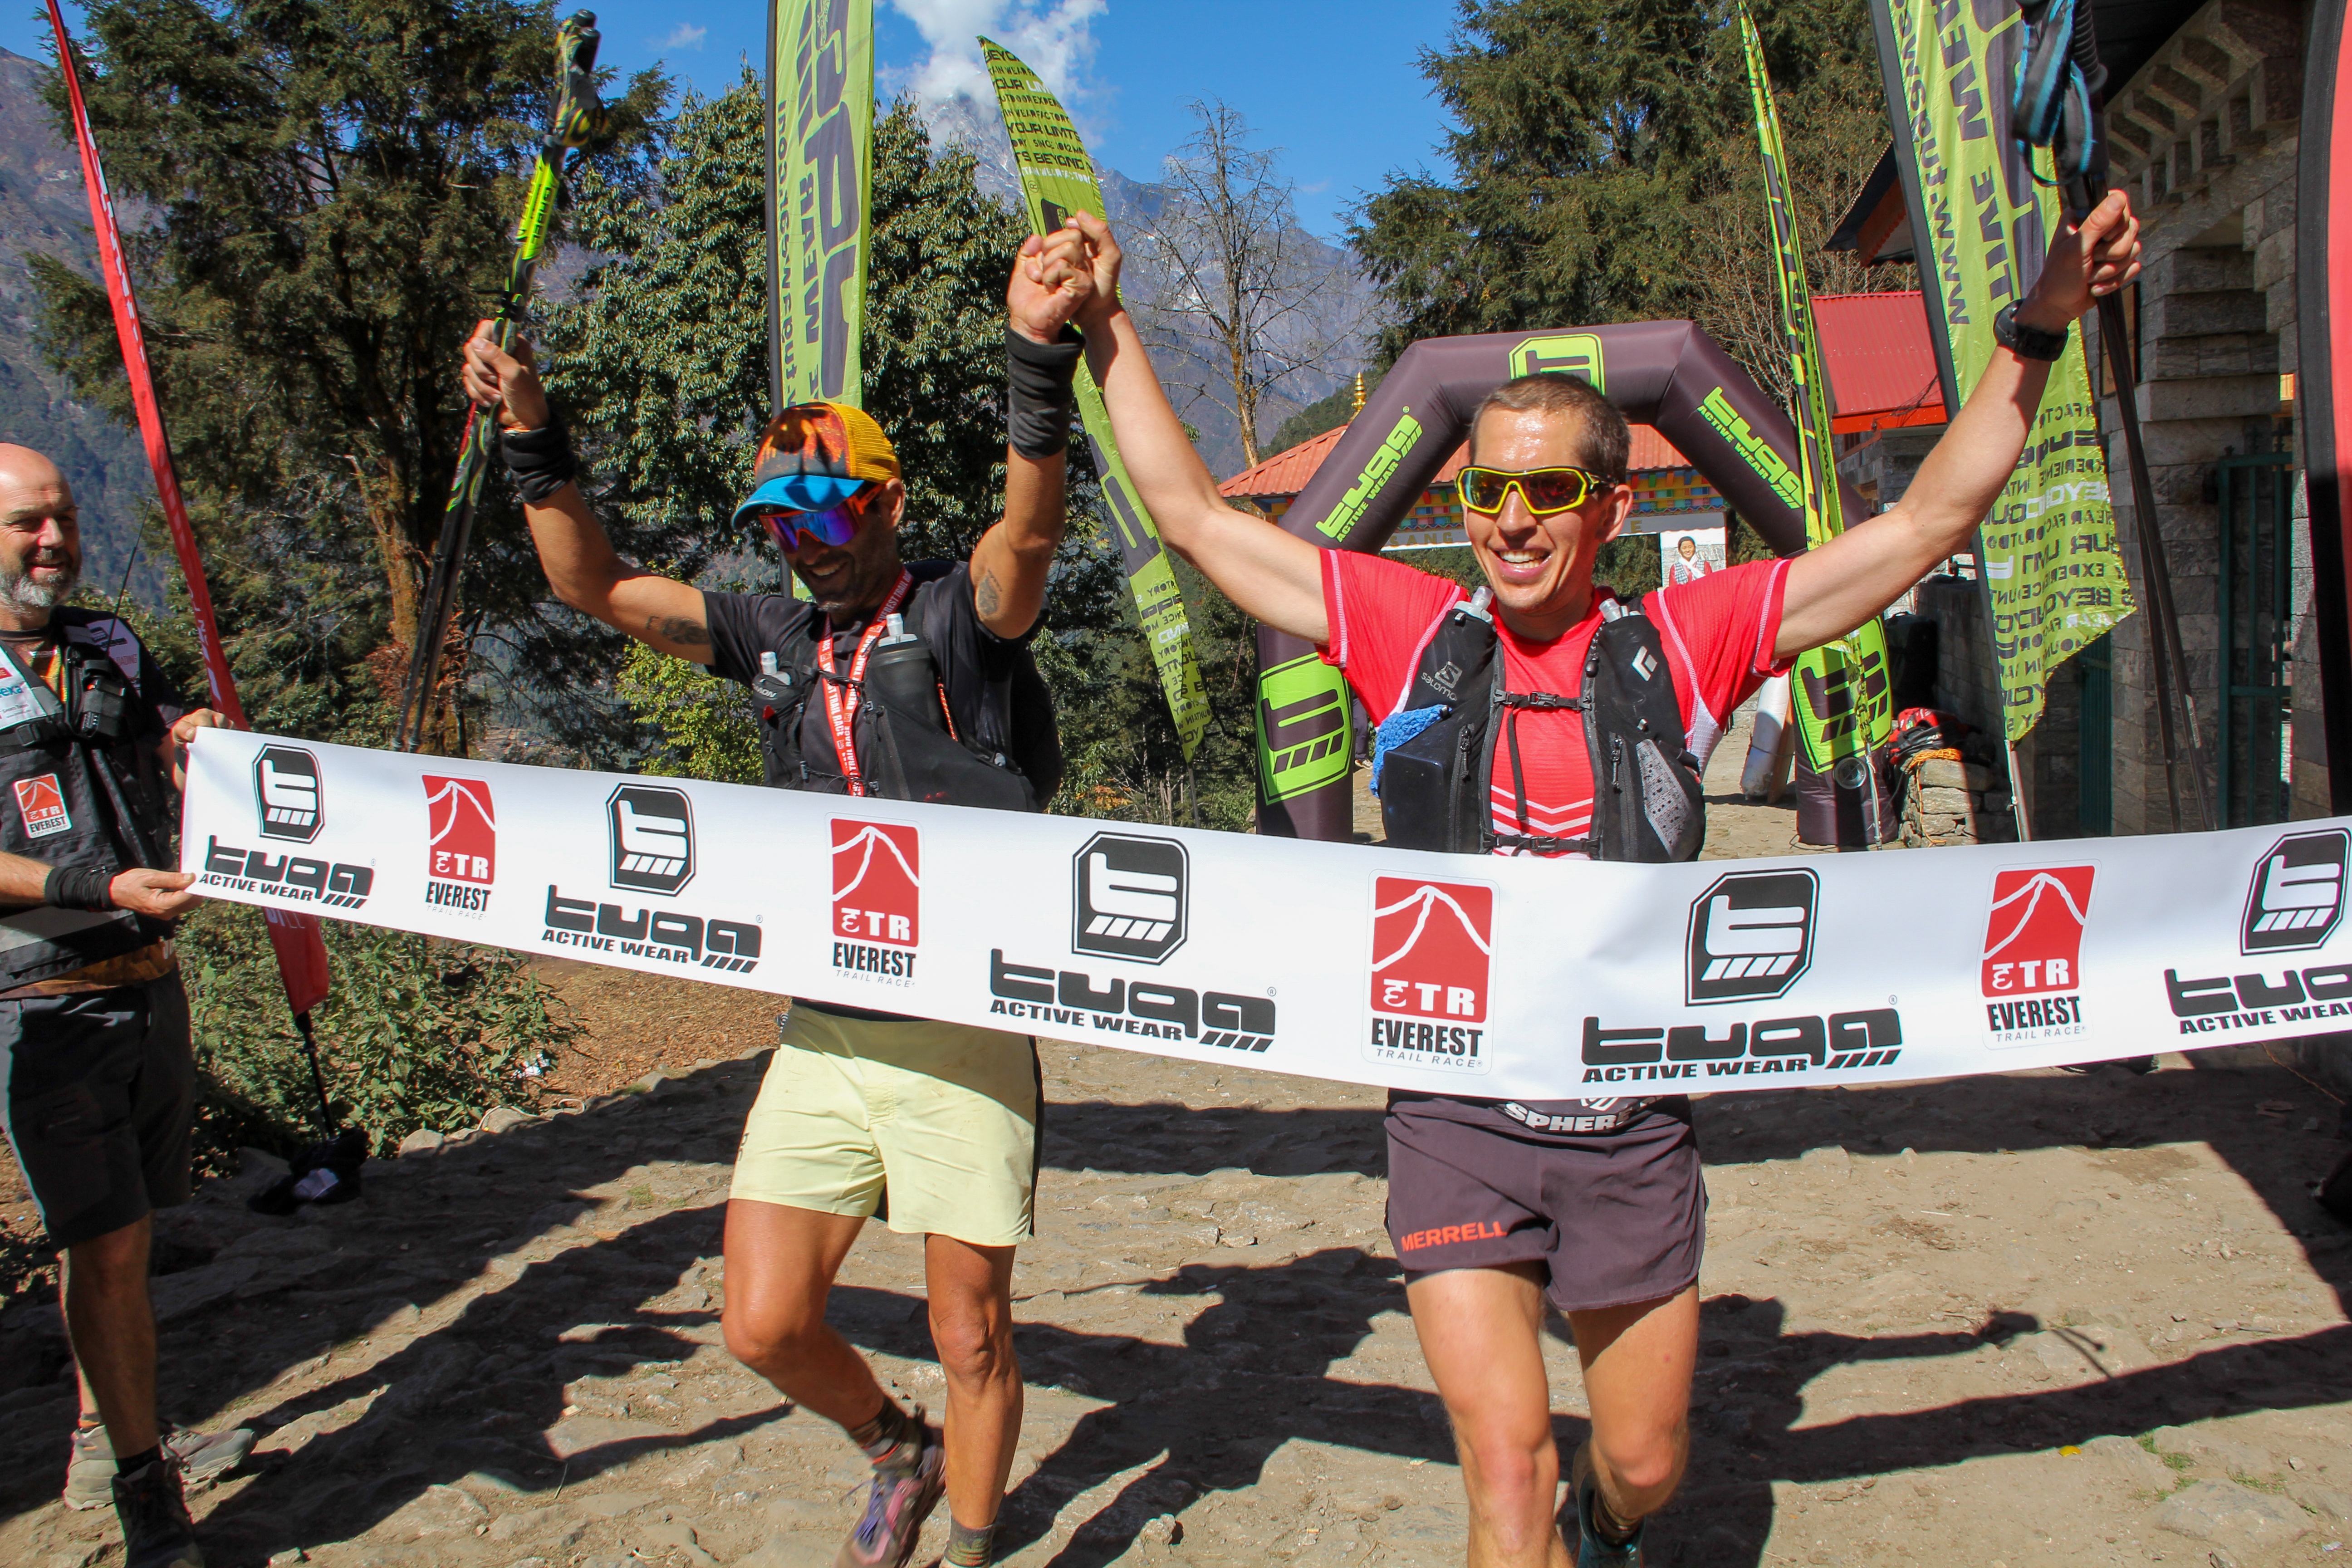 Los catalanes Marc Ollé y Gerard Morales, en el podio de la Everest Trail Race